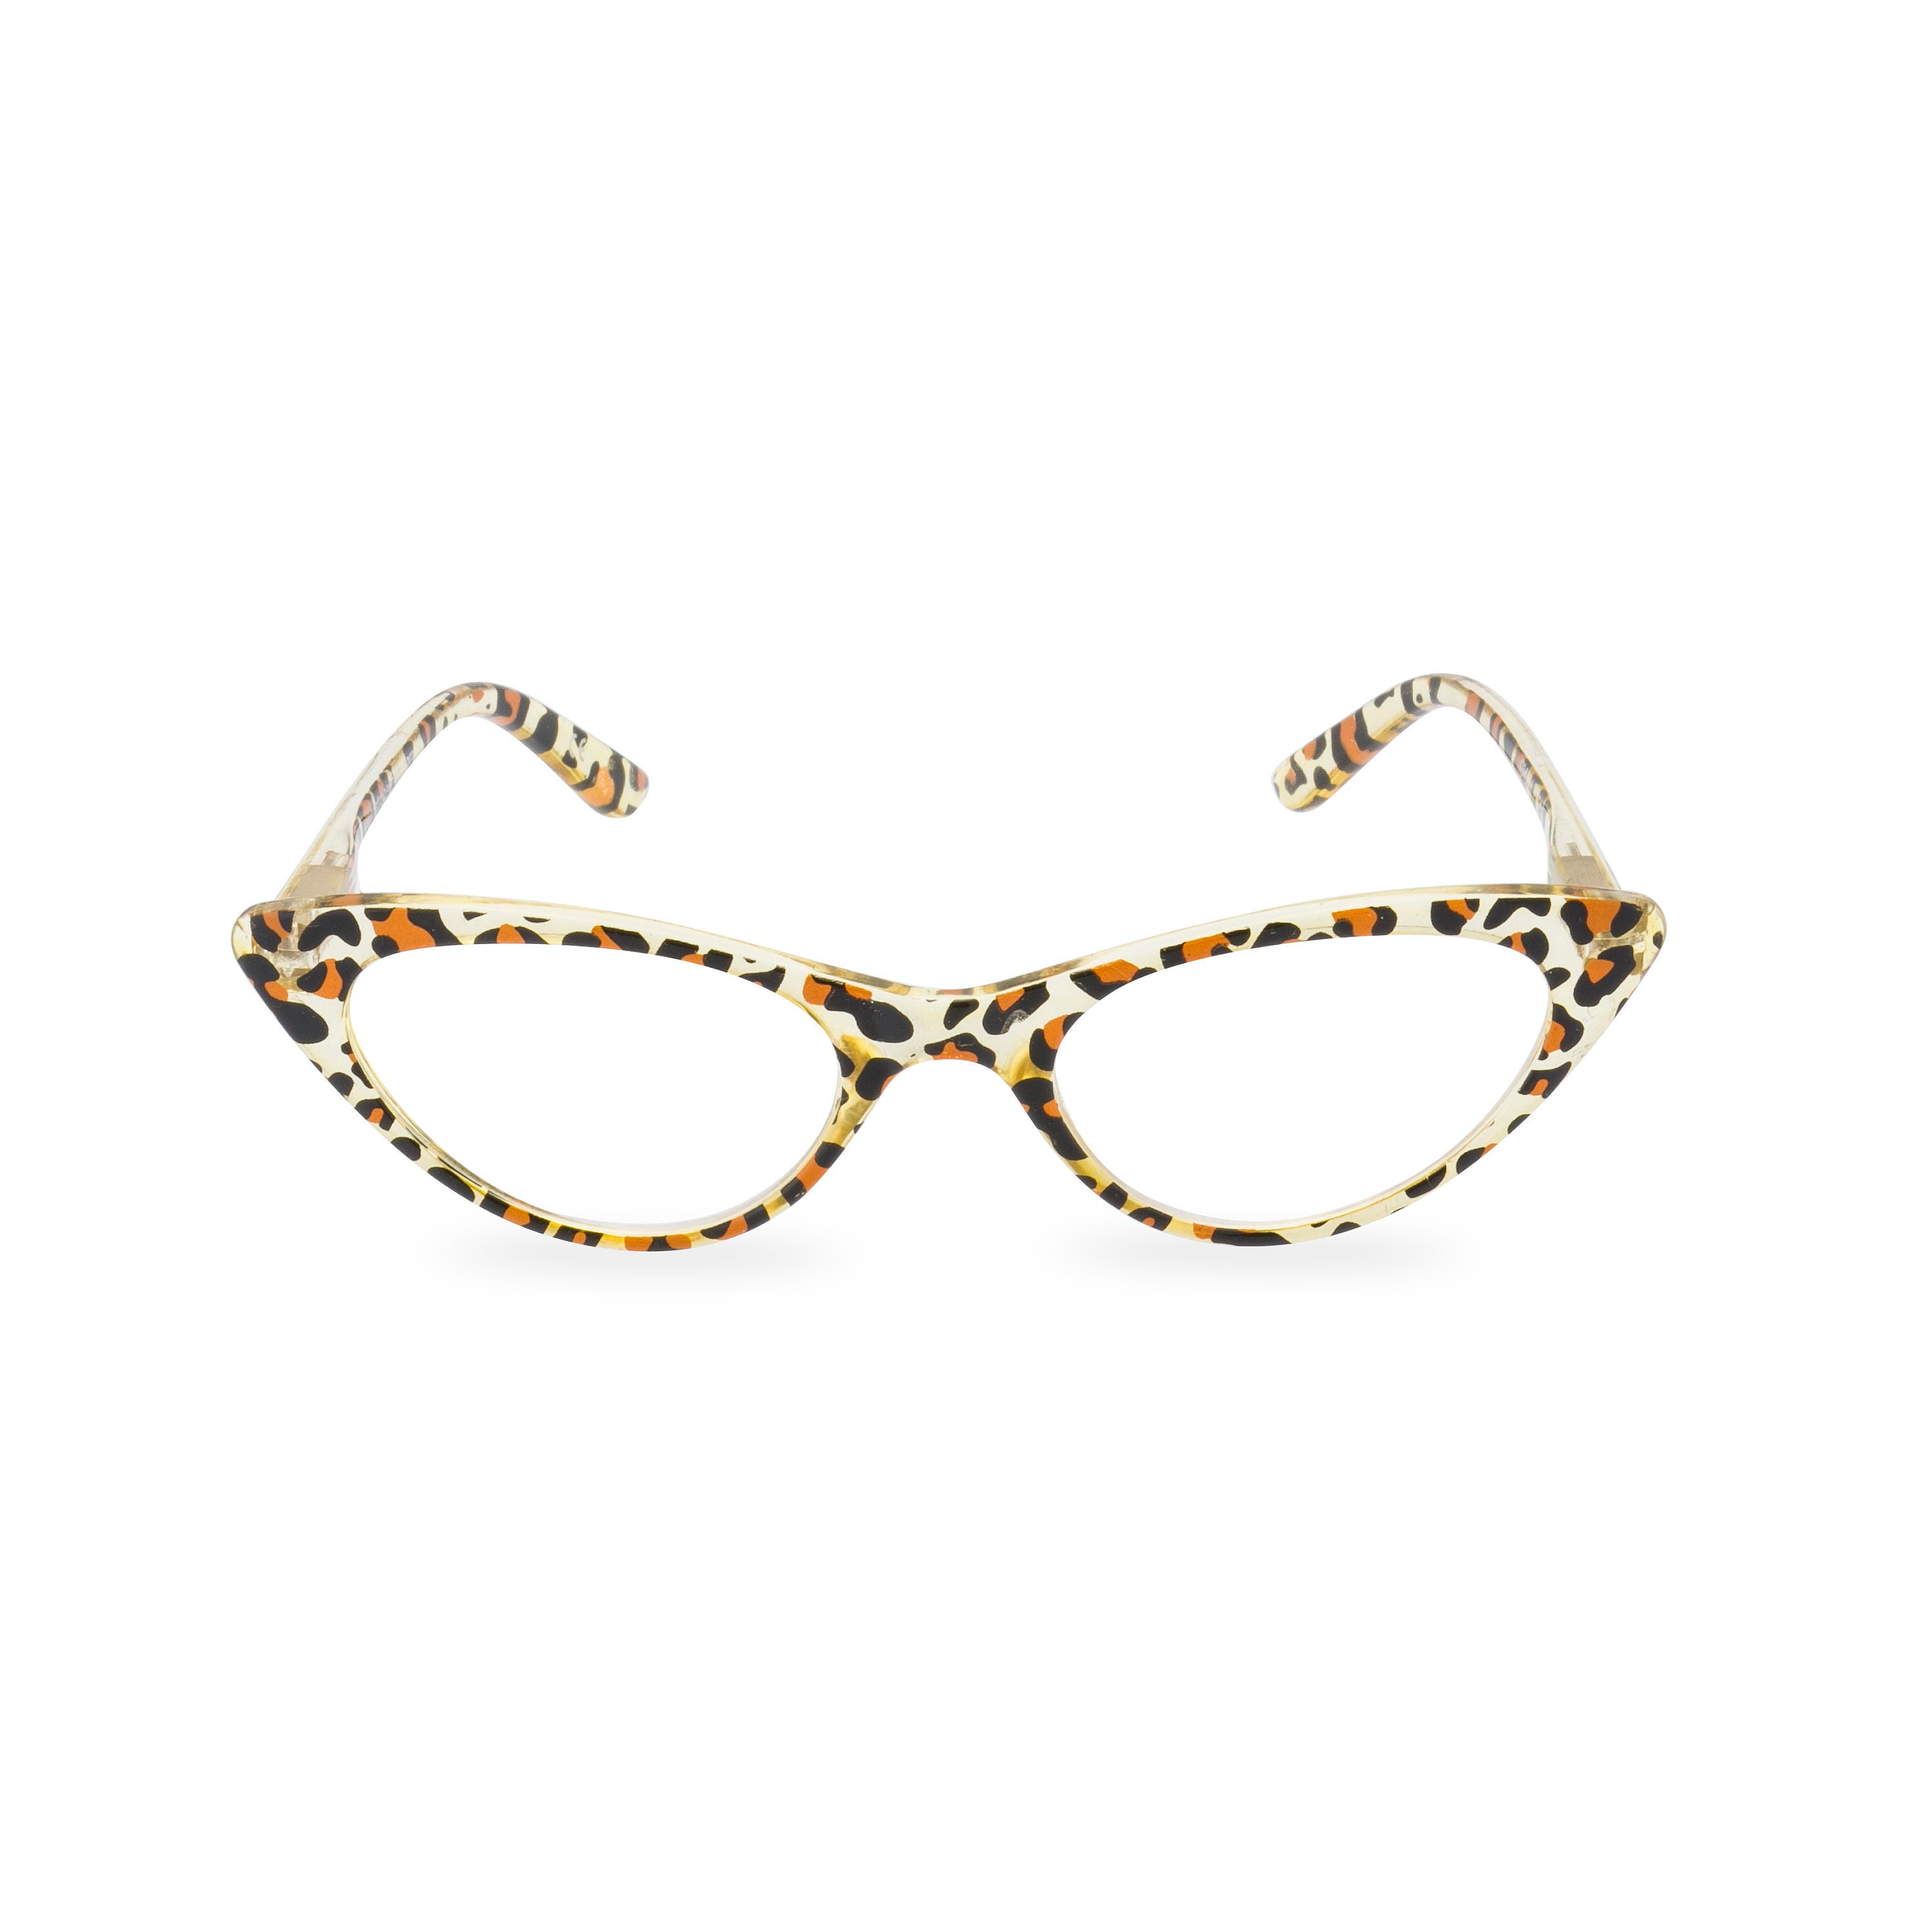 UK SELLER Flirt Glasses Clear Lens  Party Retro Vintage Trendy  UV400 